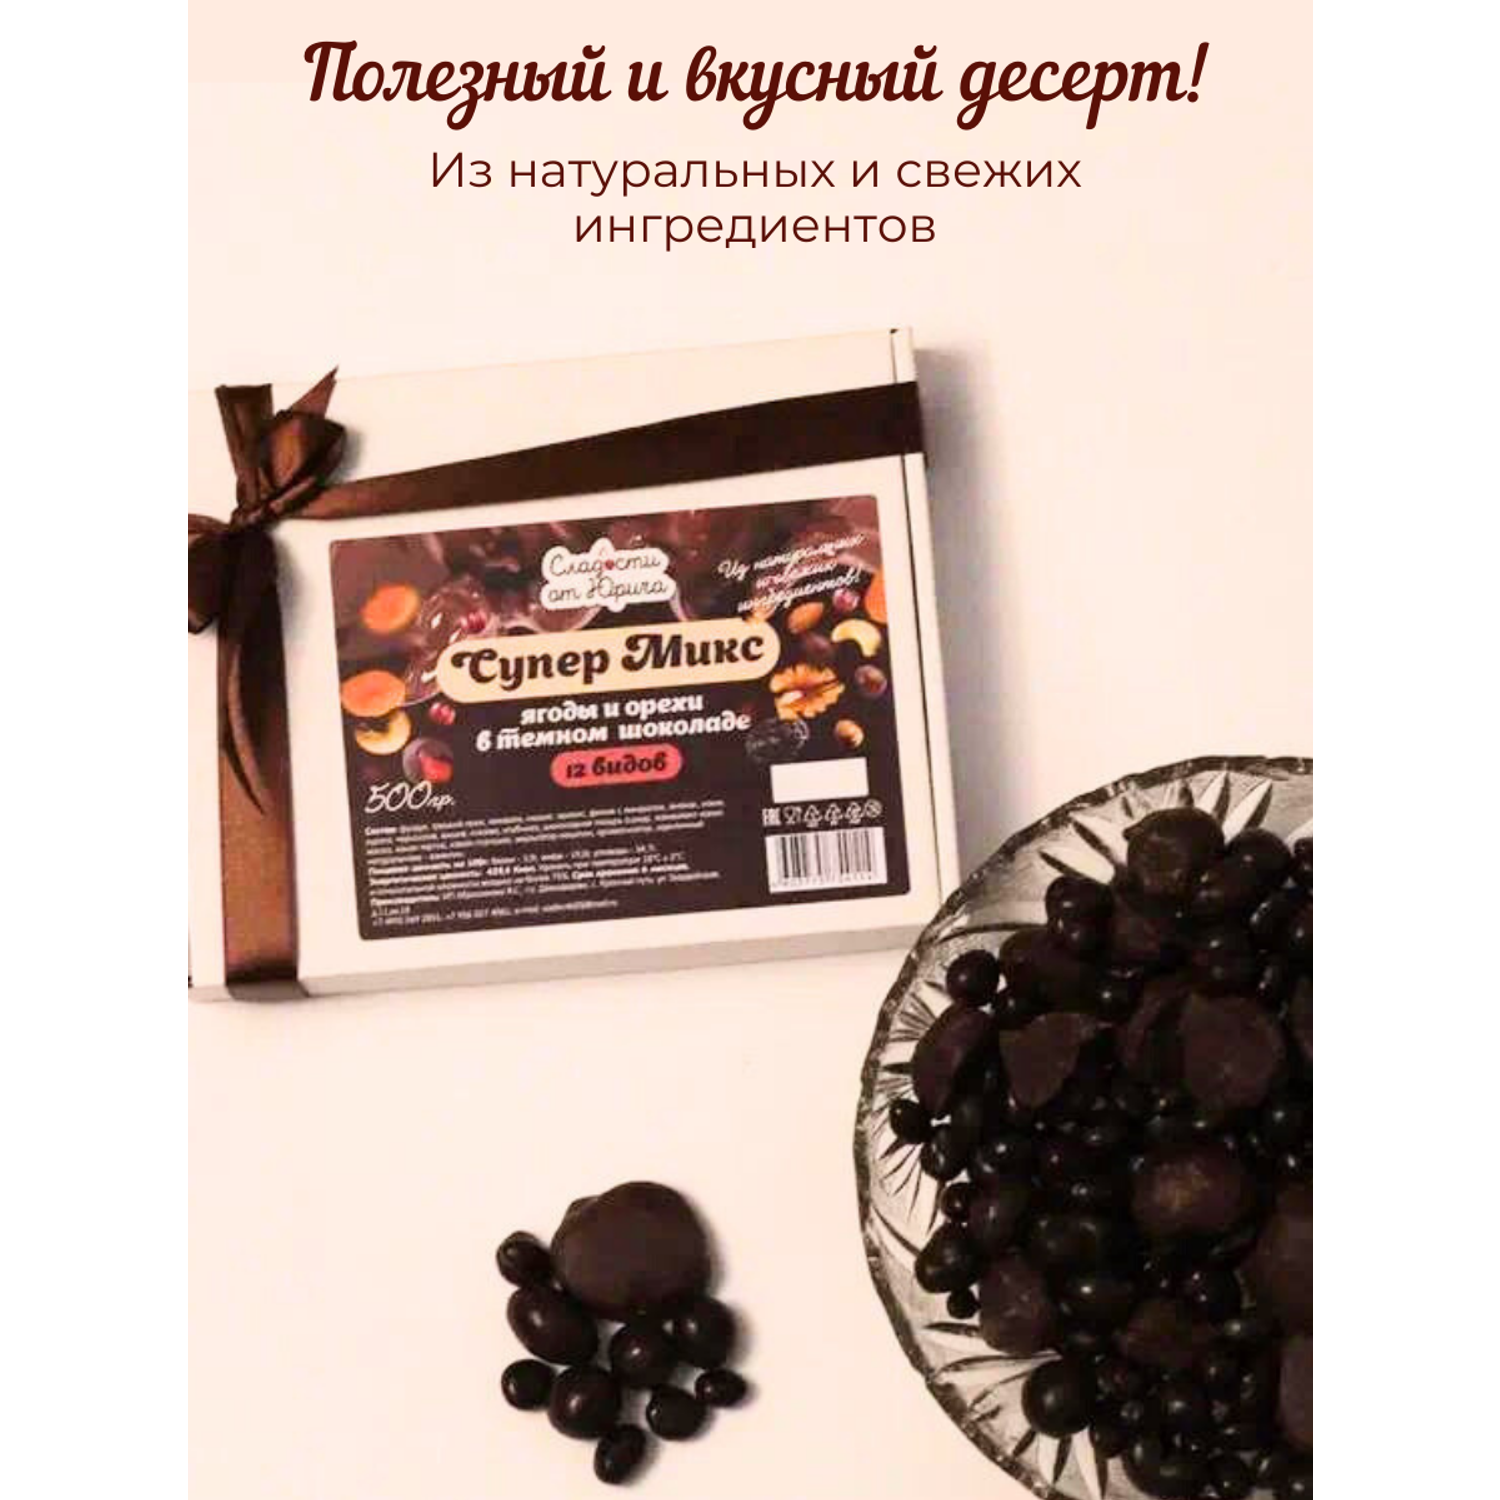 12 ягод и орехов в шоколаде Сладости от Юрича 500гр - фото 2